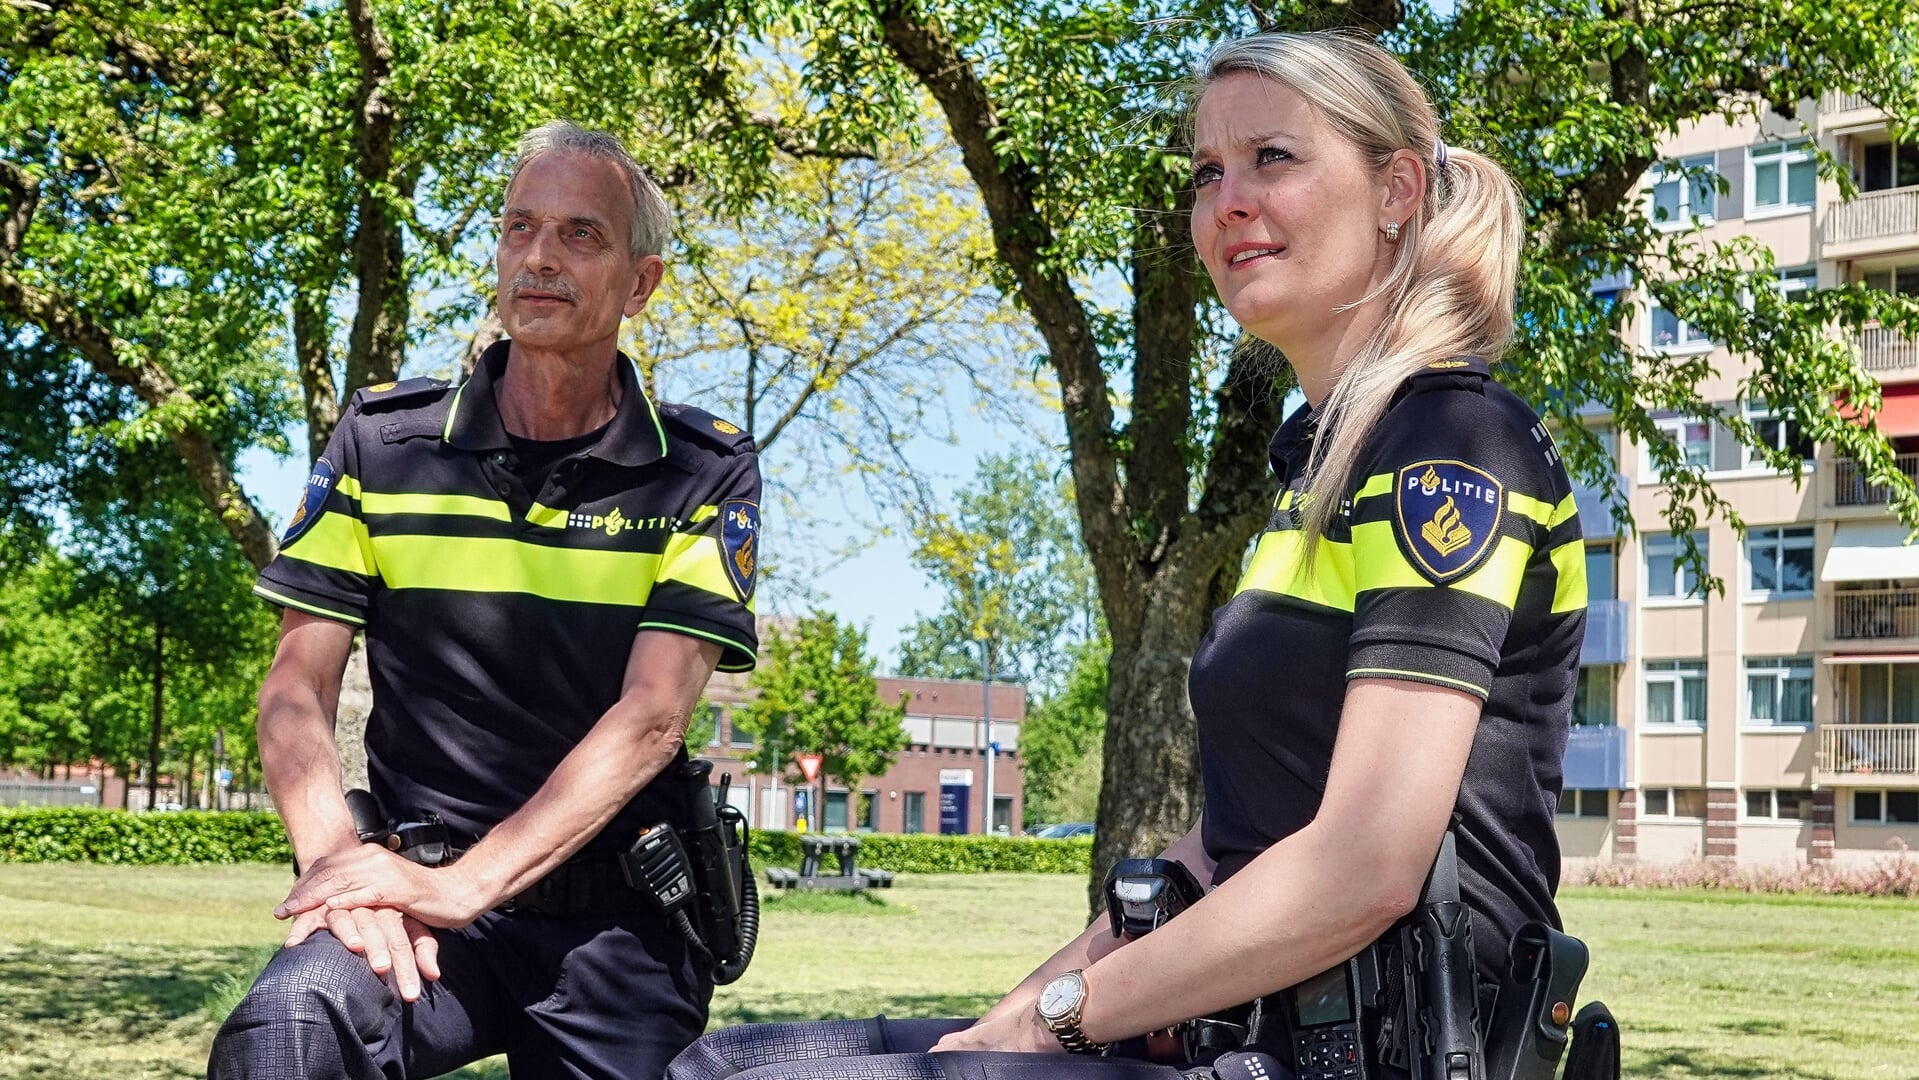 Ad Cleijsen woont in Boxtel én is er bijna 42 jaar wijkagent. Hoofdagent Linda van de Laar, die sinds 2008 vanuit het Boxtelse politiebureau opereert, neemt zijn taak in het werkgebied tussen Bosscheweg-Brederodeweg en rijksweg A2 over. (Foto: Albert Stolwijk).